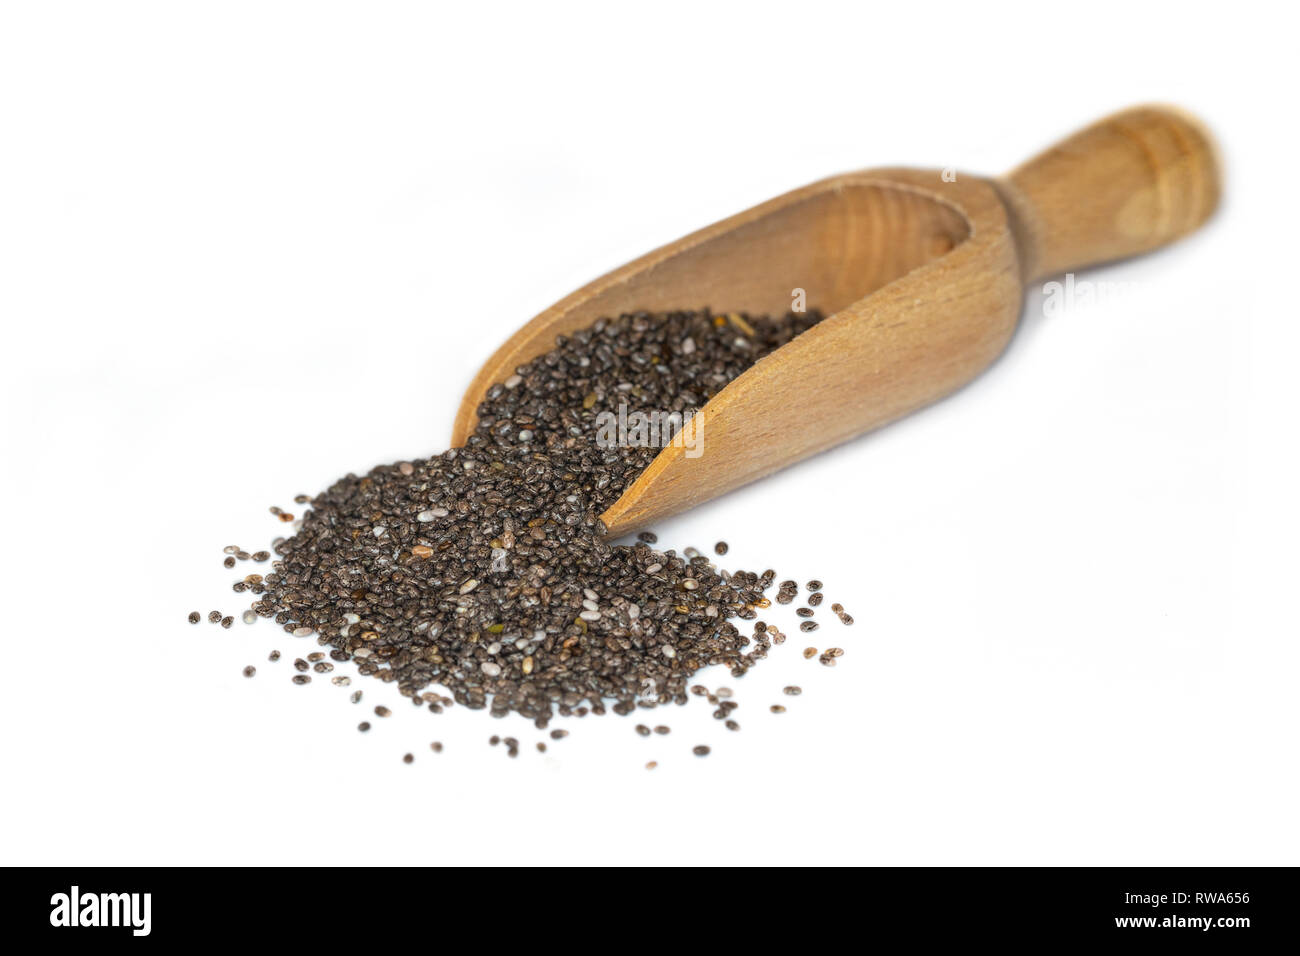 Primer plano del negro chia semillas a base de vegetales, fuente de ácidos grasos omega-3, presentada en una pequeña cuchara de madera Foto de stock